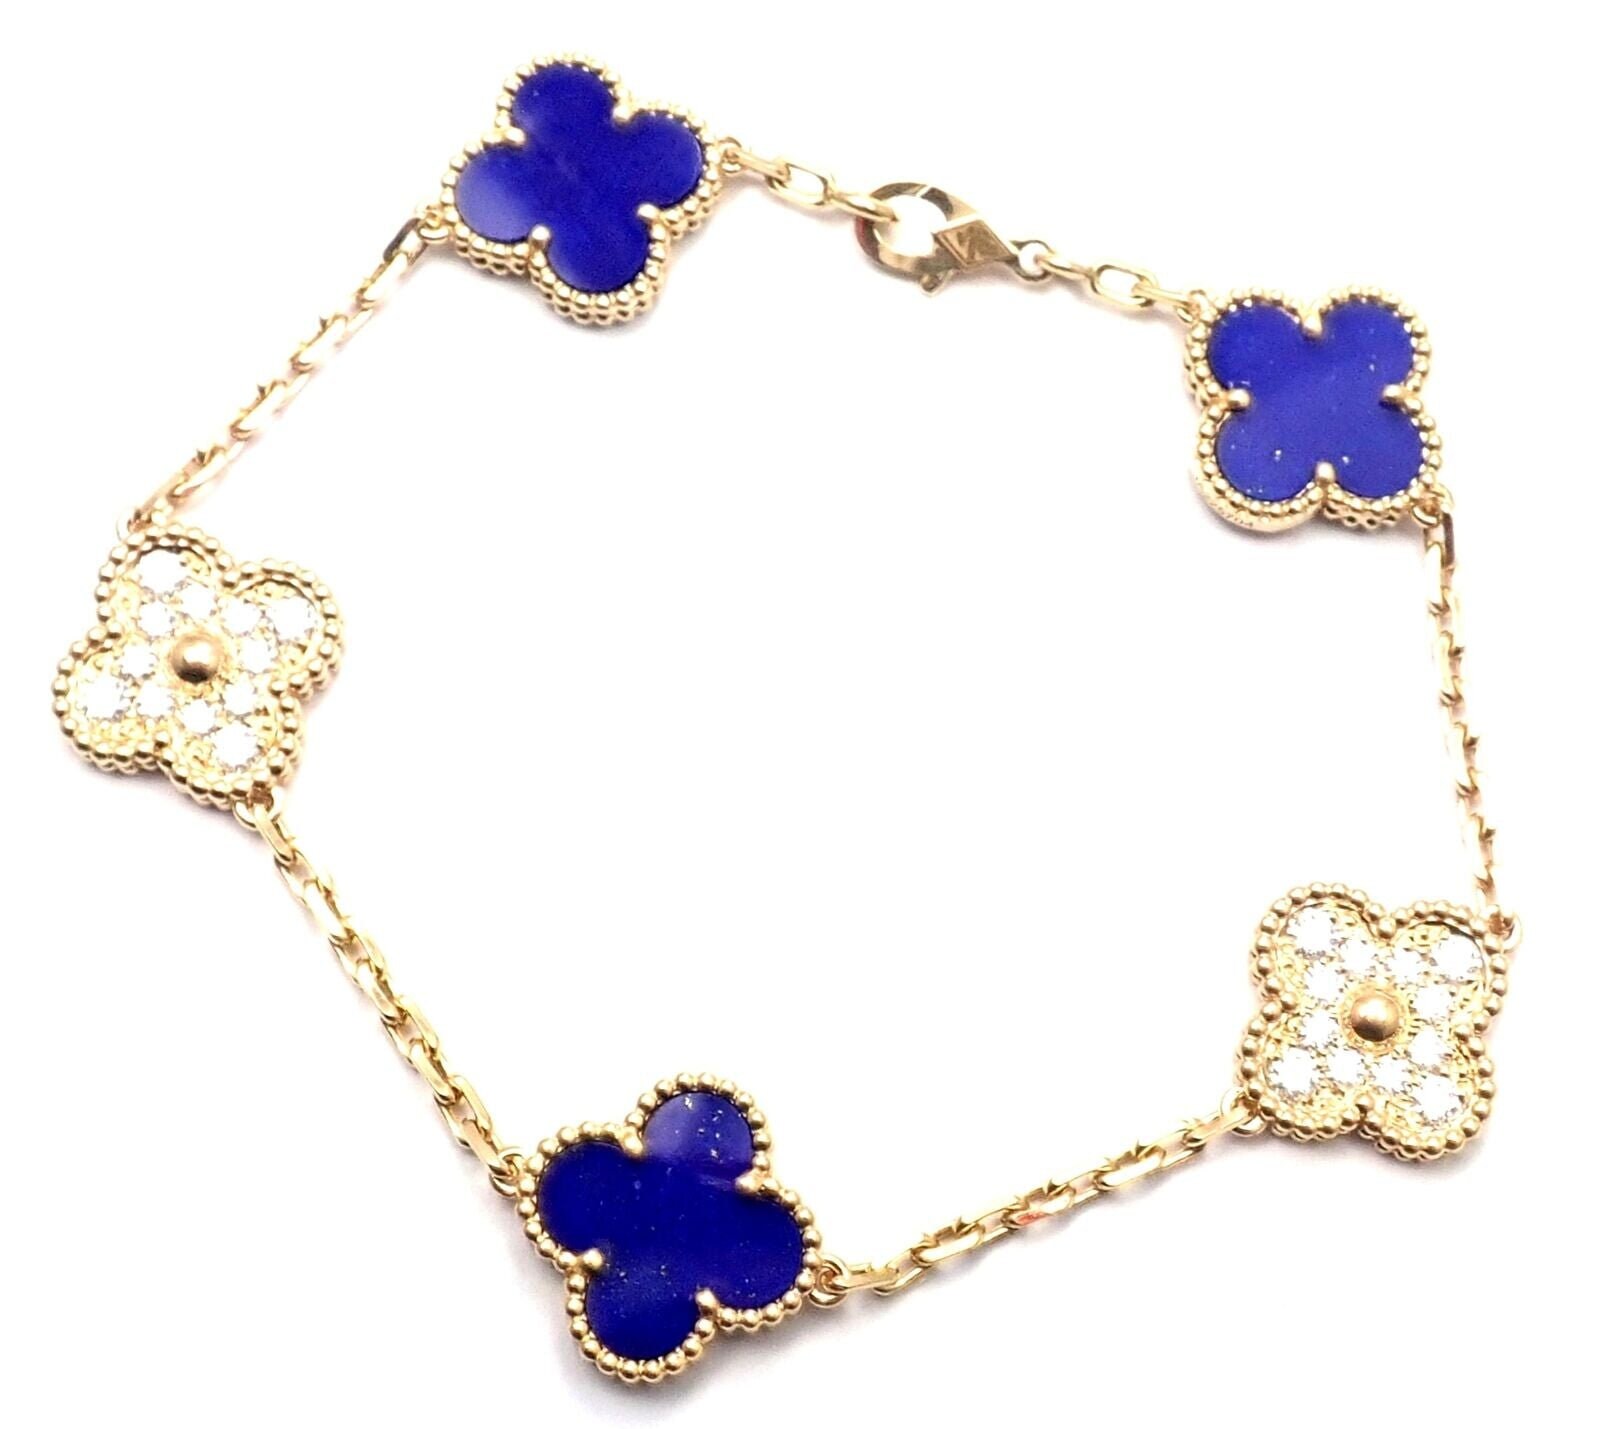 Van Cleef & Arpels Vintage Alhambra Bracelet 5 Motifs - 18K Yellow Gold  Station, Bracelets - VAC22004